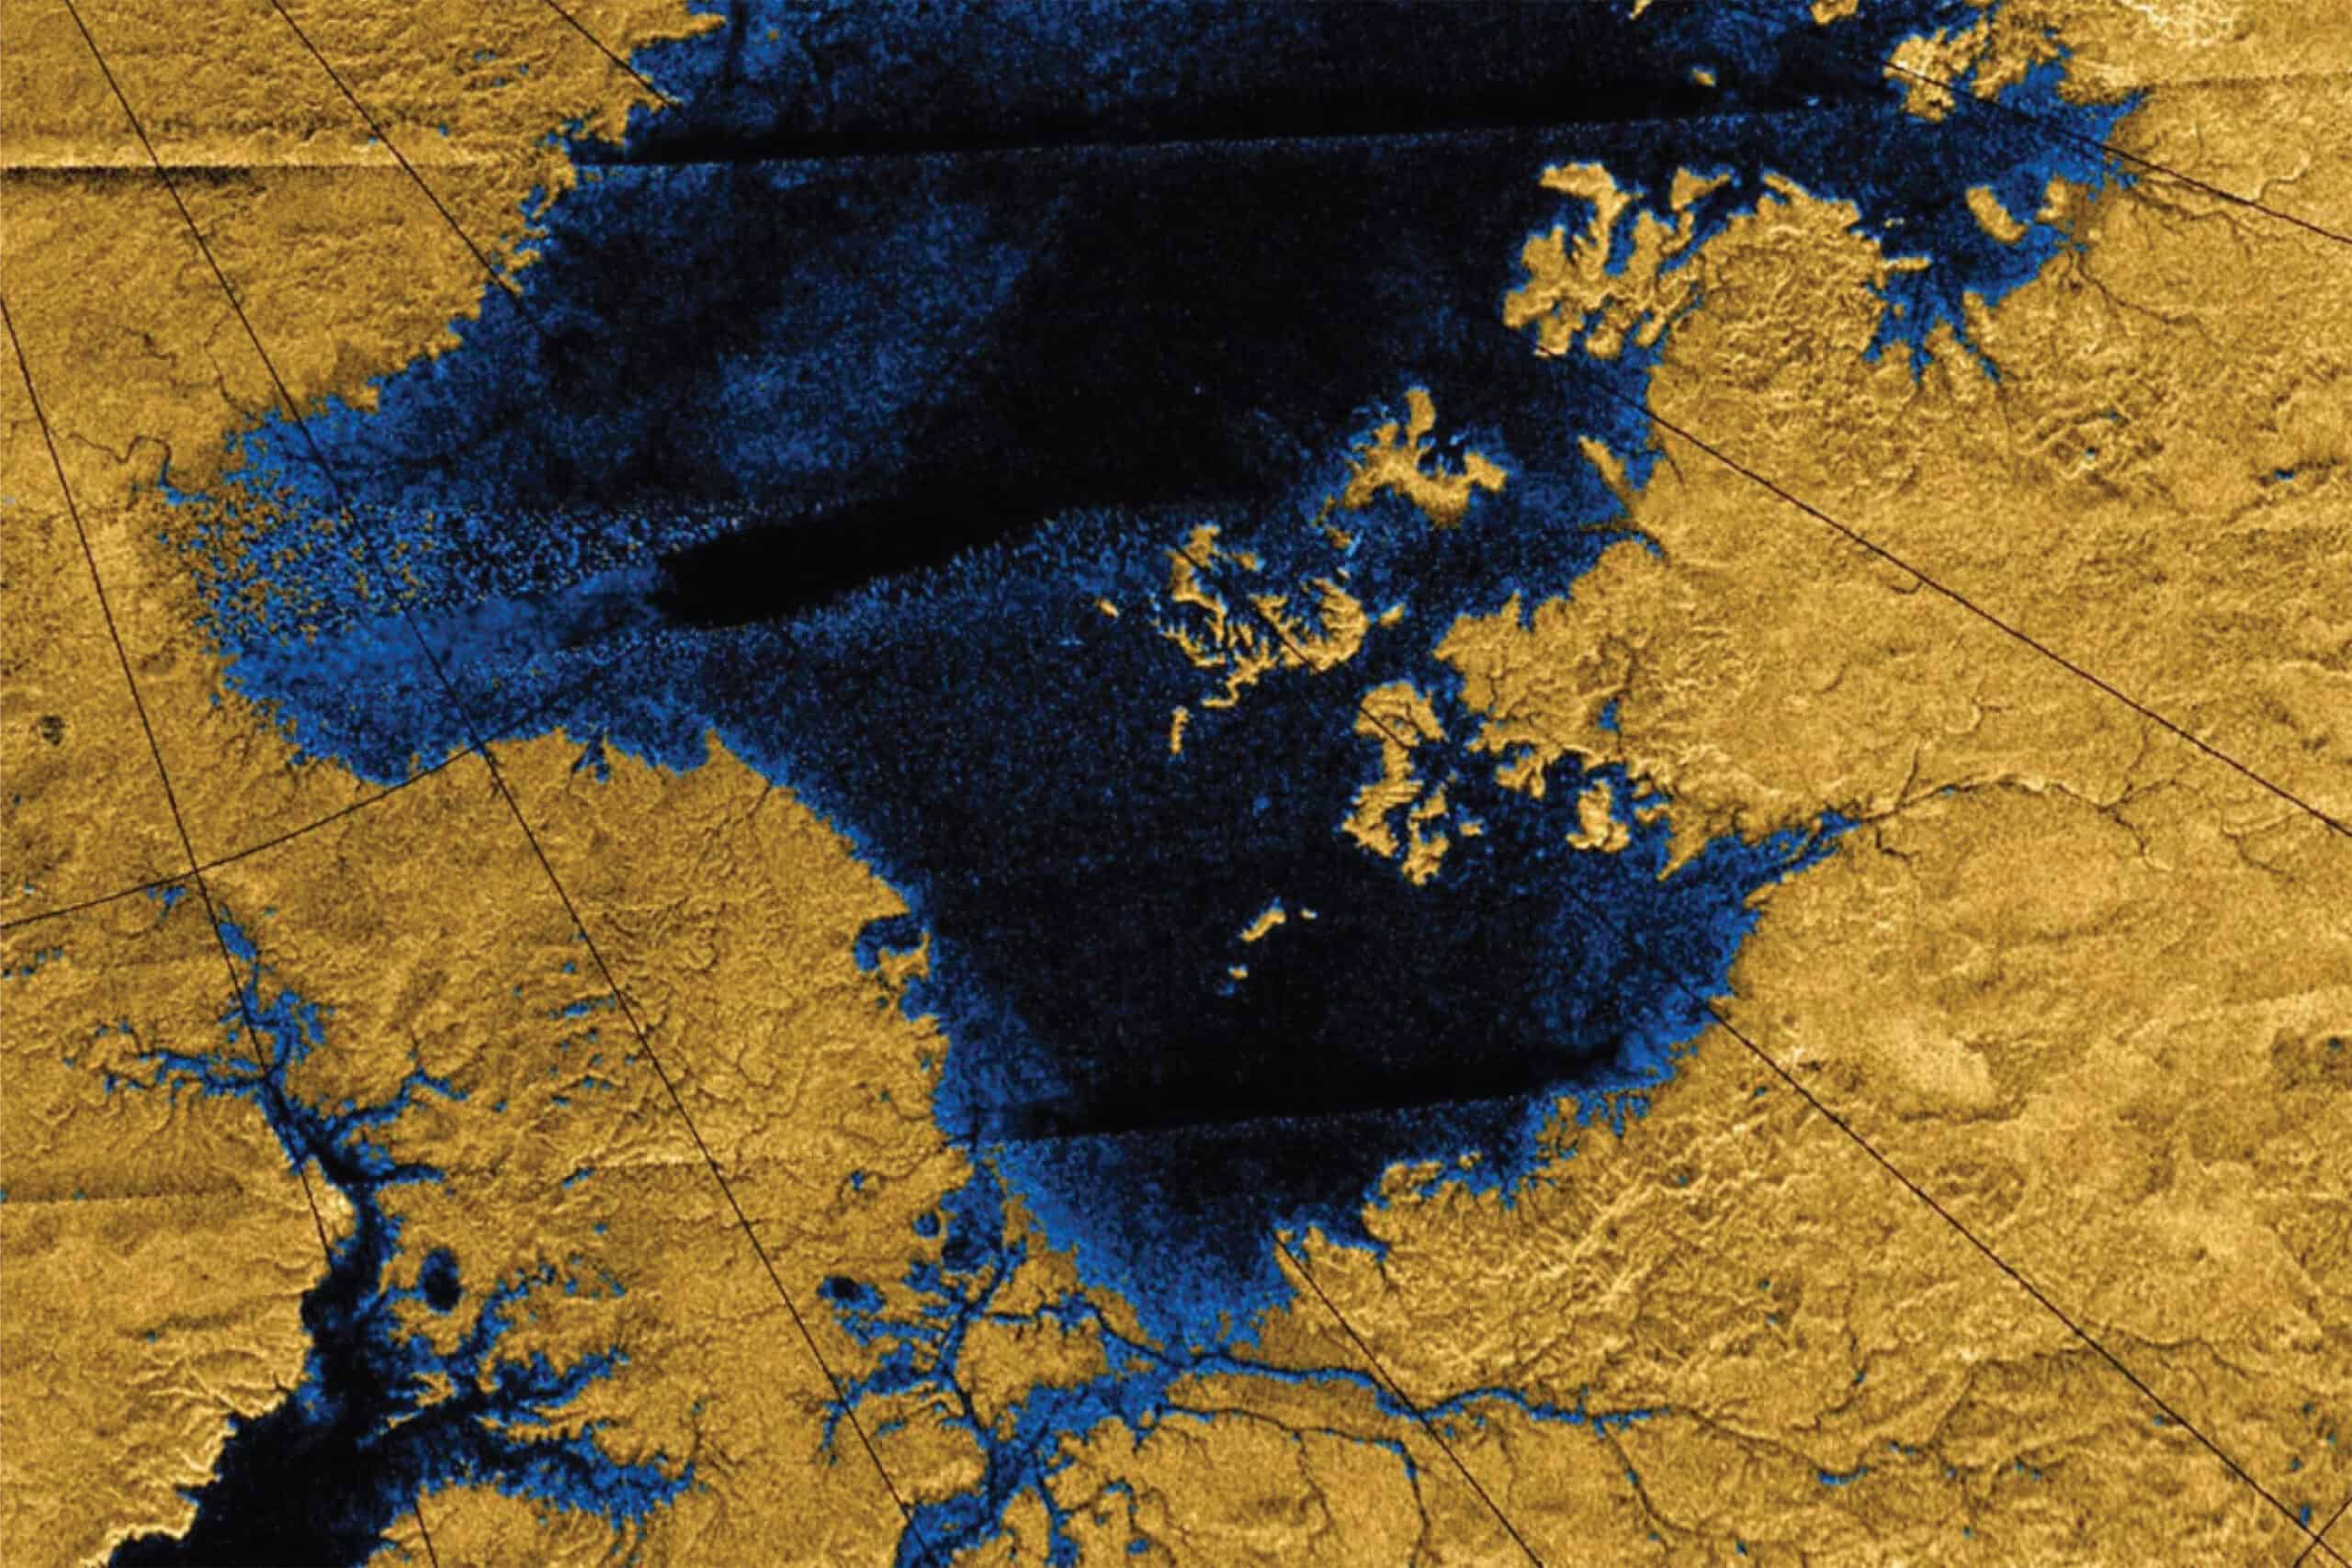 Rivers on Titan